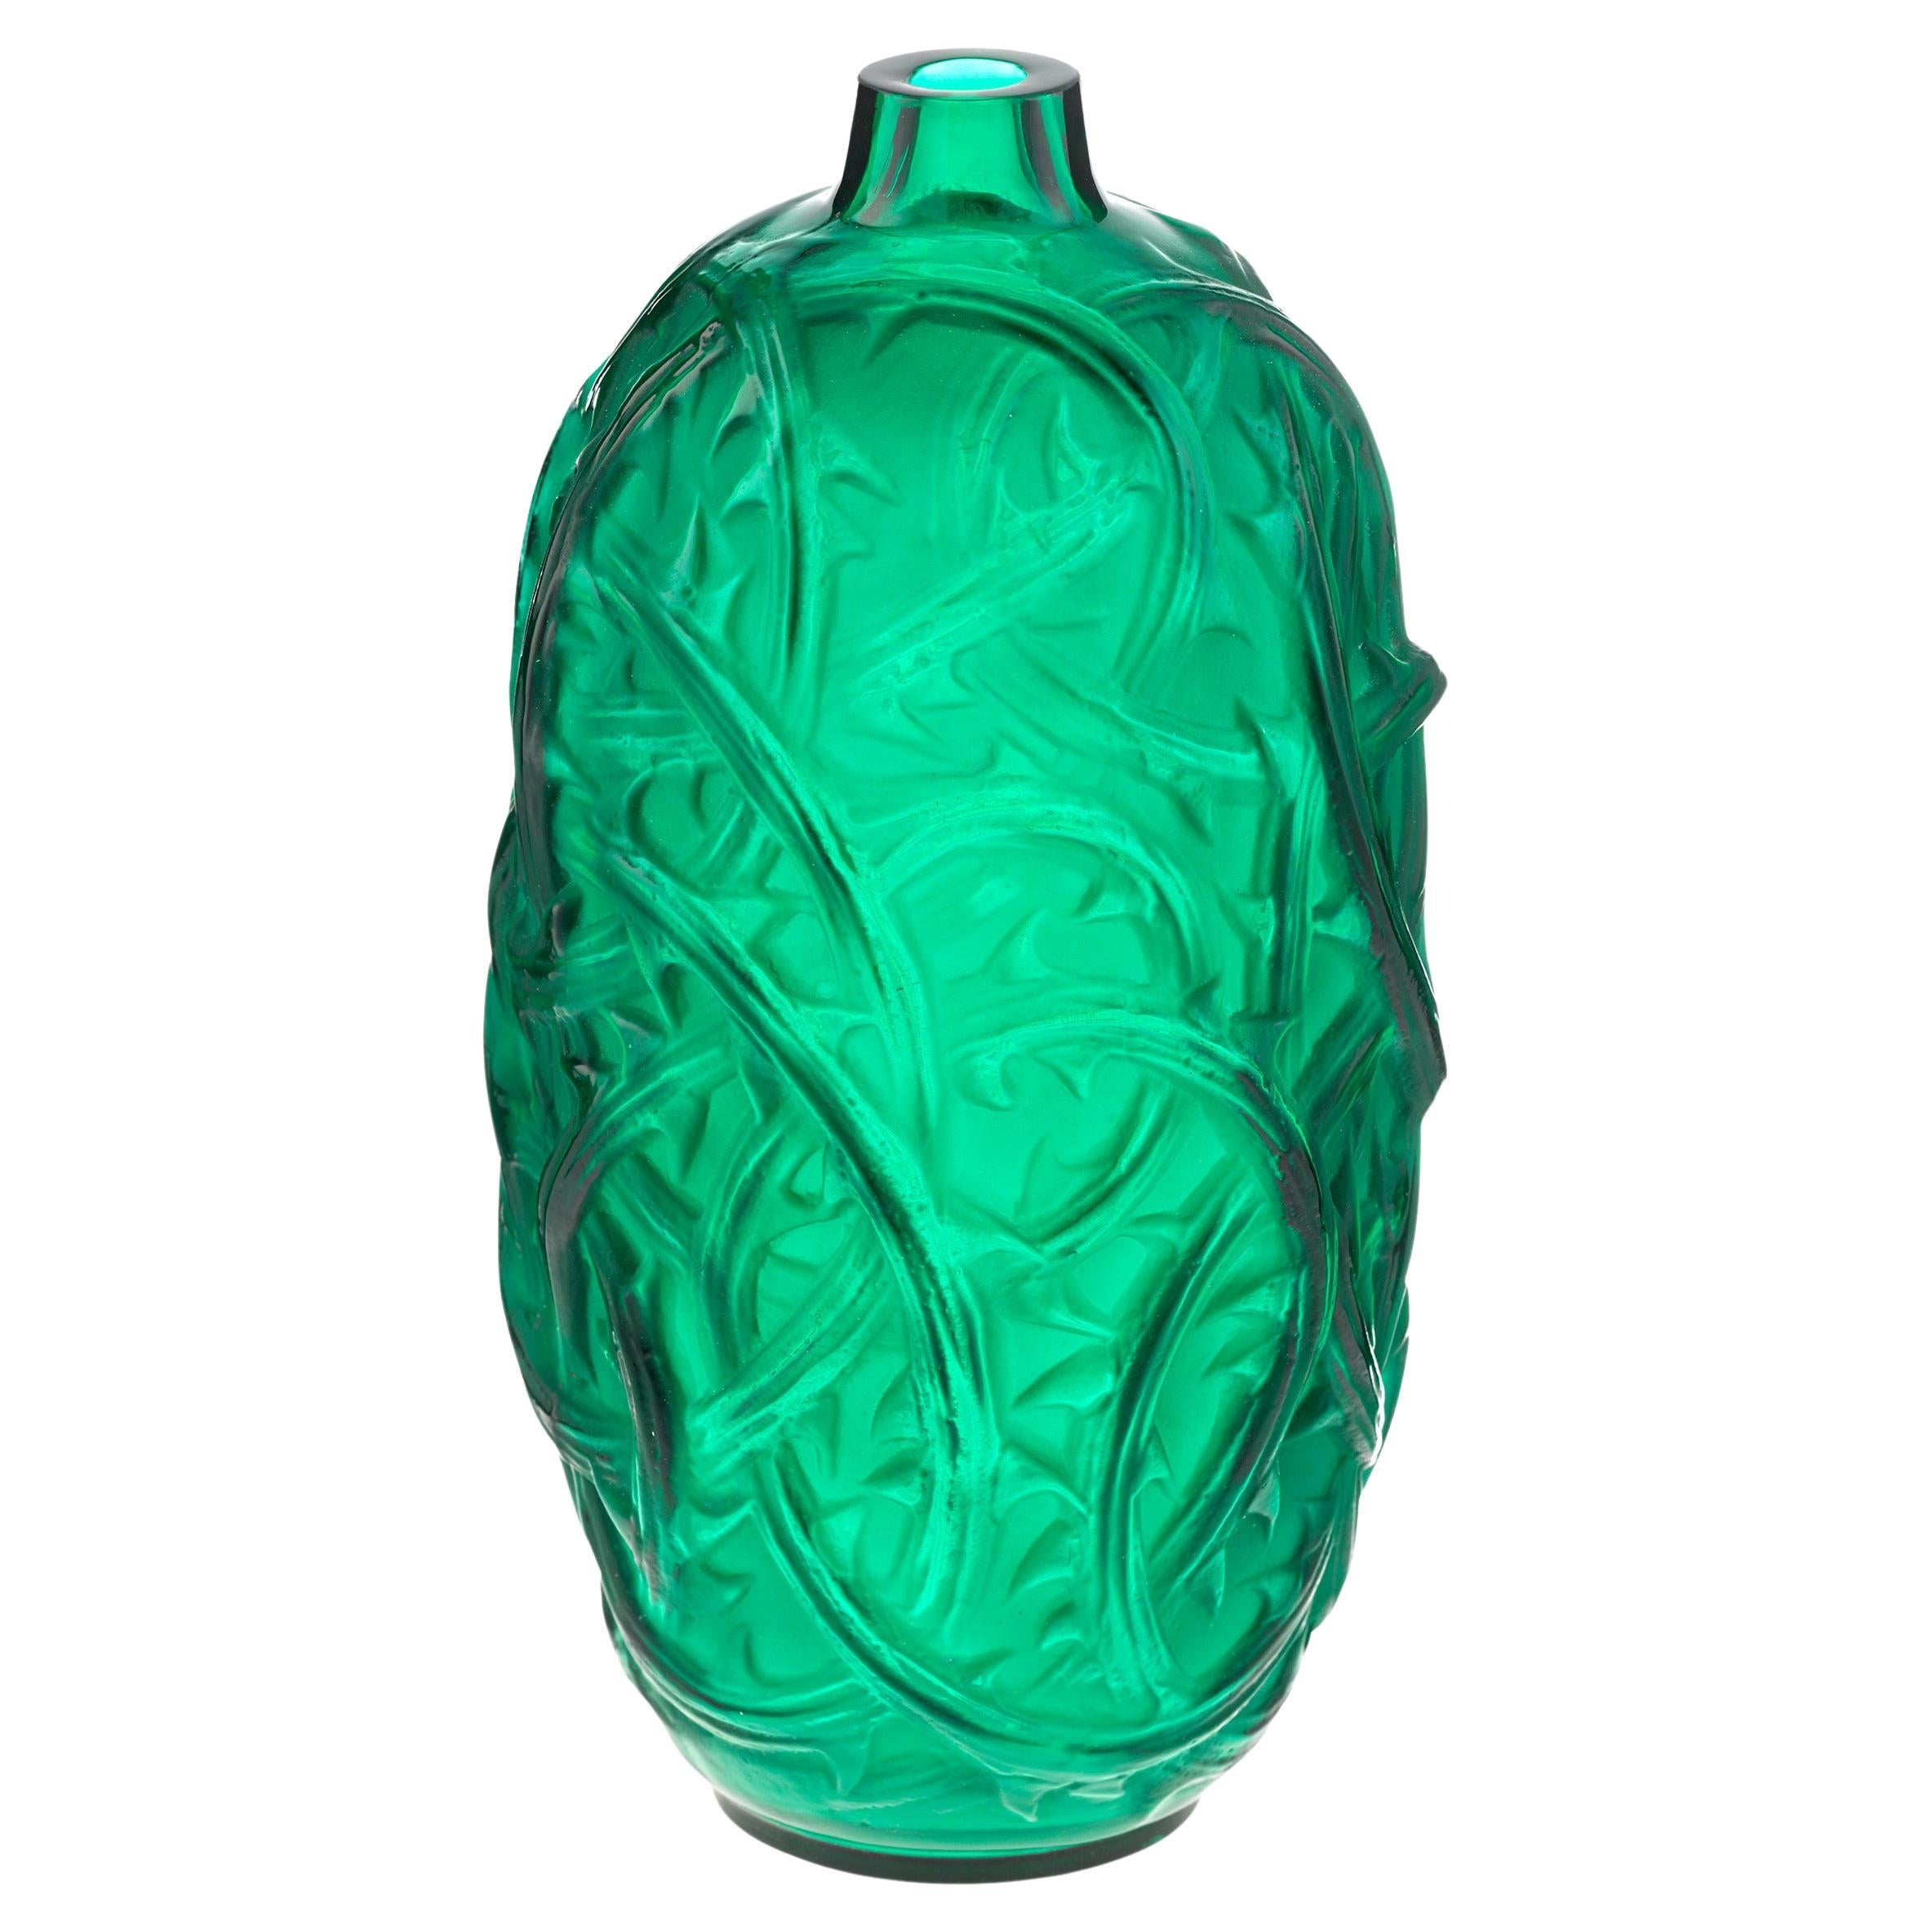 Grüne Ronces Vase von René Lalique